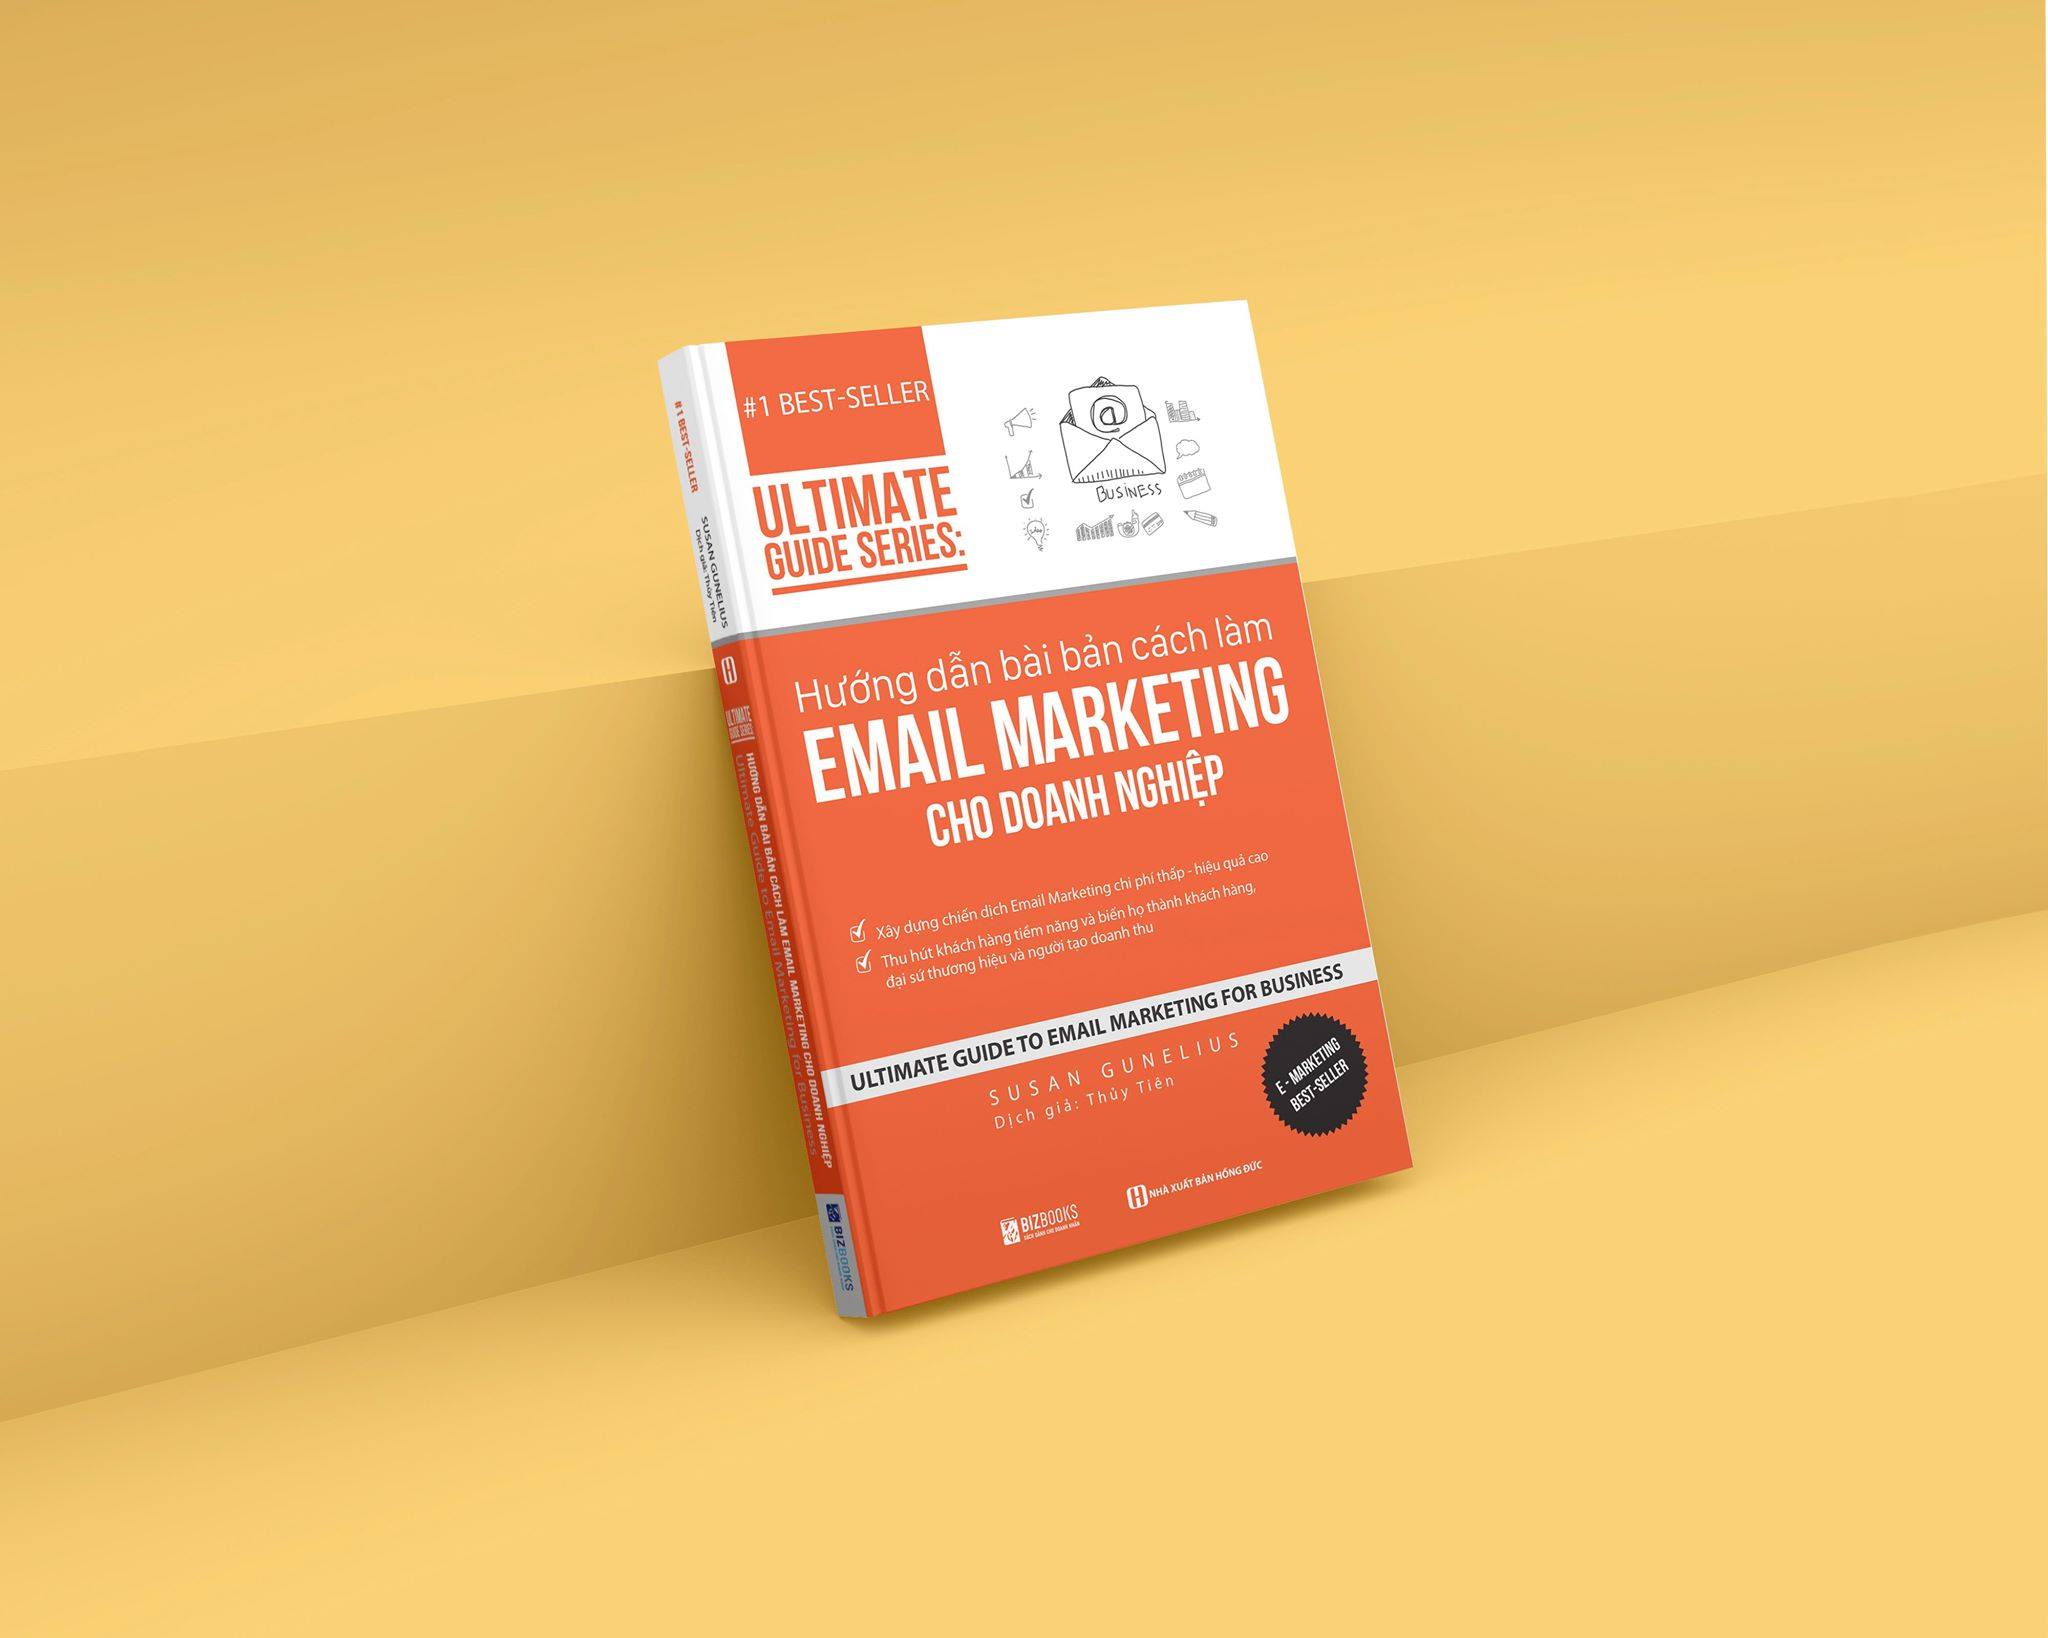 Hướng dẫn bài bản cách làm Email Marketing cho doanh nghiệp | Ultimate Guide Series 3